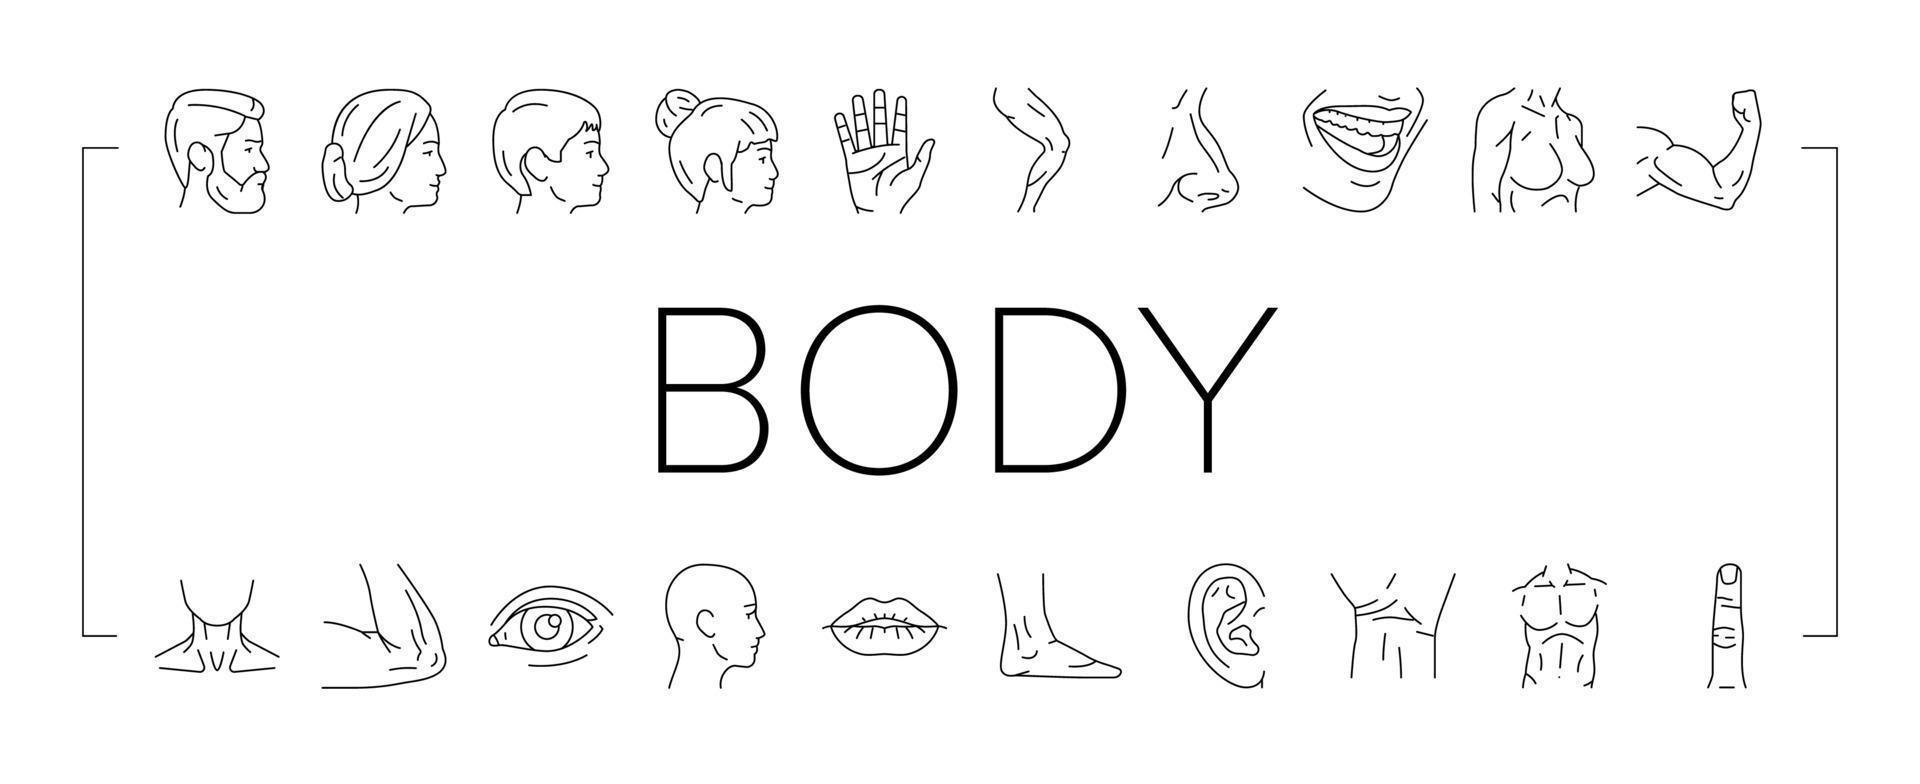 conjunto de iconos de partes de personas corporales y faciales vector